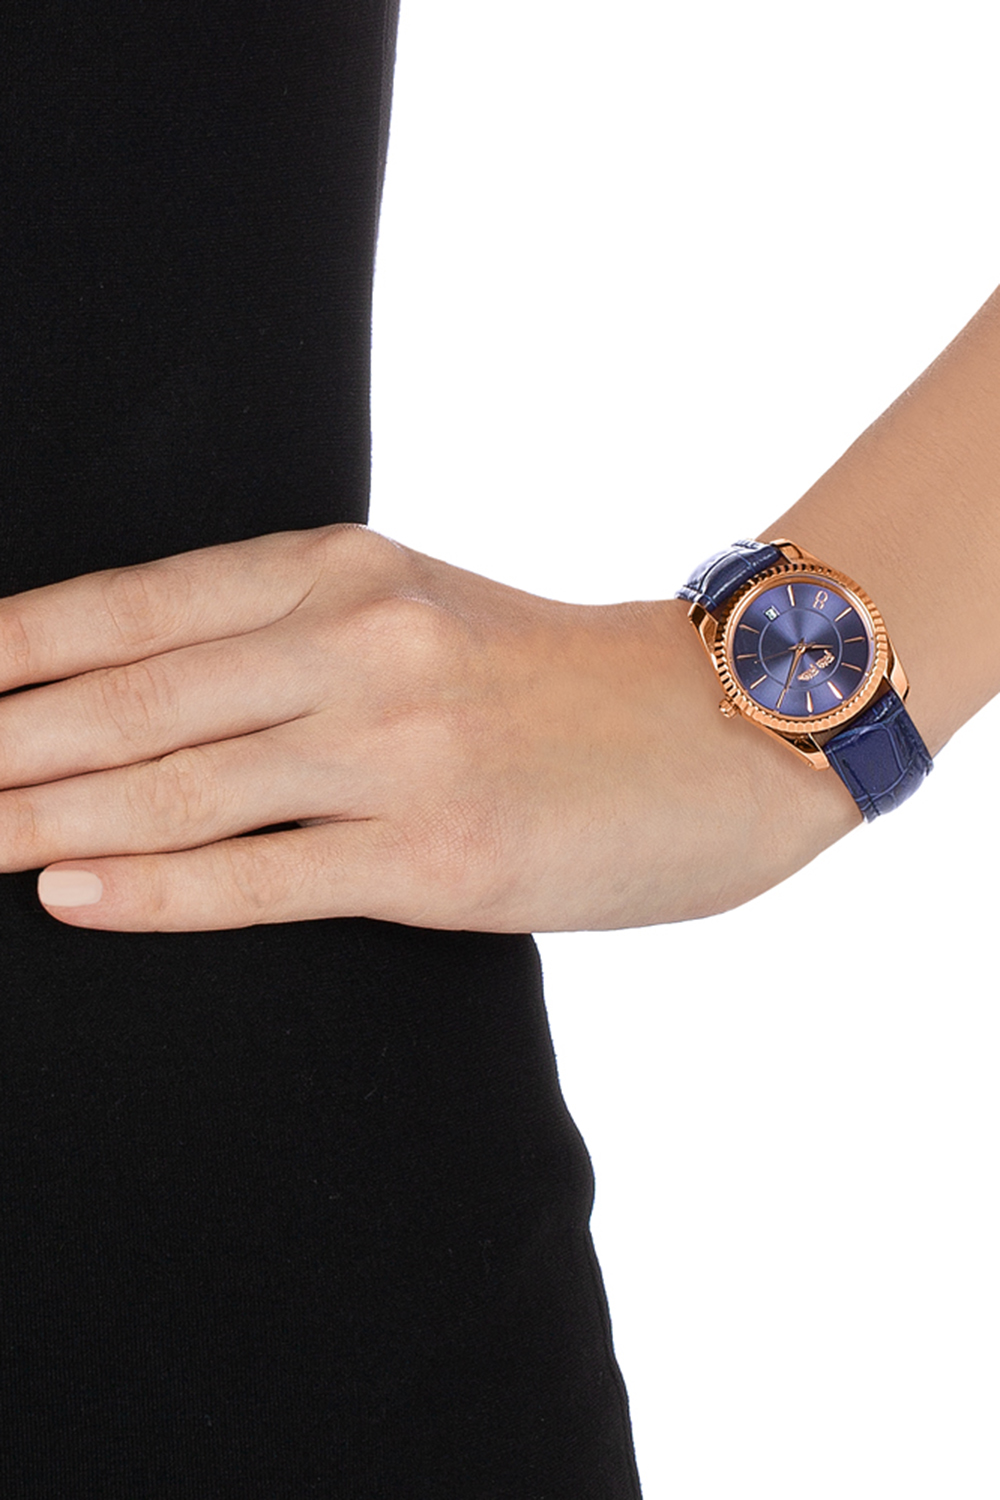 Γυναικεία/Αξεσουάρ/Ρολόγια/Δερμάτινα FOLLI FOLLIE - Γυναικείο ρολόι με δερμάτινο λουράκι FOLLI FOLLIE CHRONOS TALES μπλε